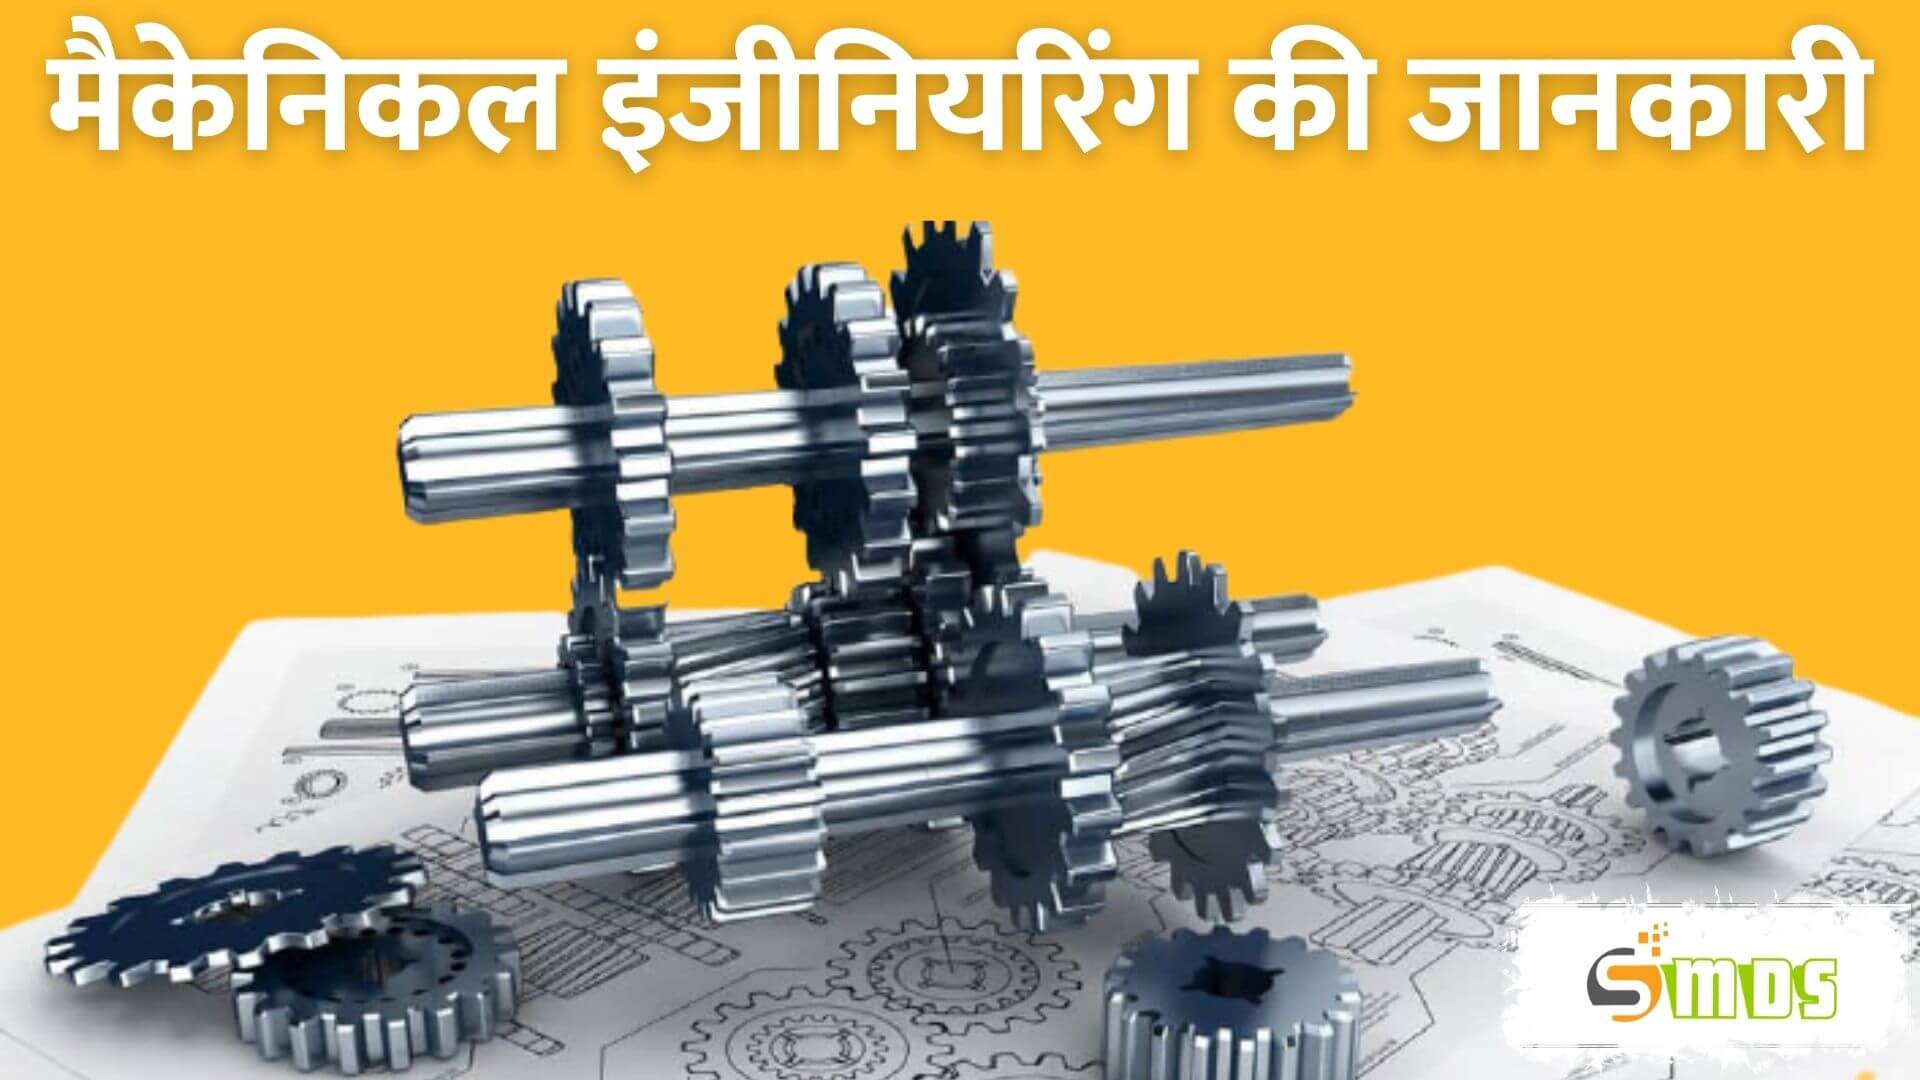 मैकेनिकल इंजीनियरिंग क्या है - Mechanical Engineering in Hindiमैकेनिकल इंजीनियरिंग क्या है - Mechanical Engineering in Hindi